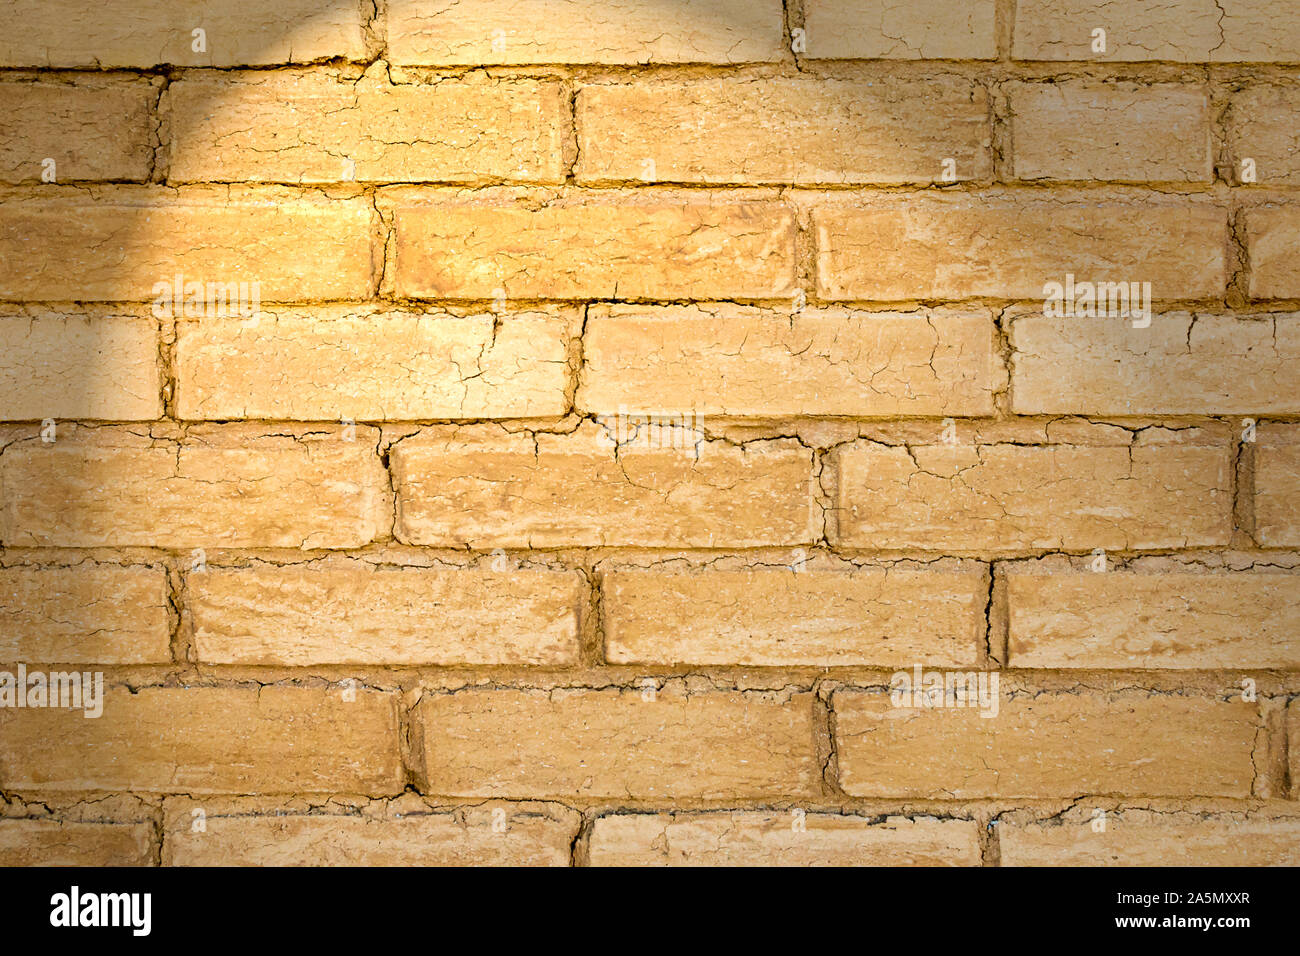 Adobe brick wall, ancestral strukturellen architektonischen Element aus Erde mit großer isolierenden Eigenschaften Stockfoto